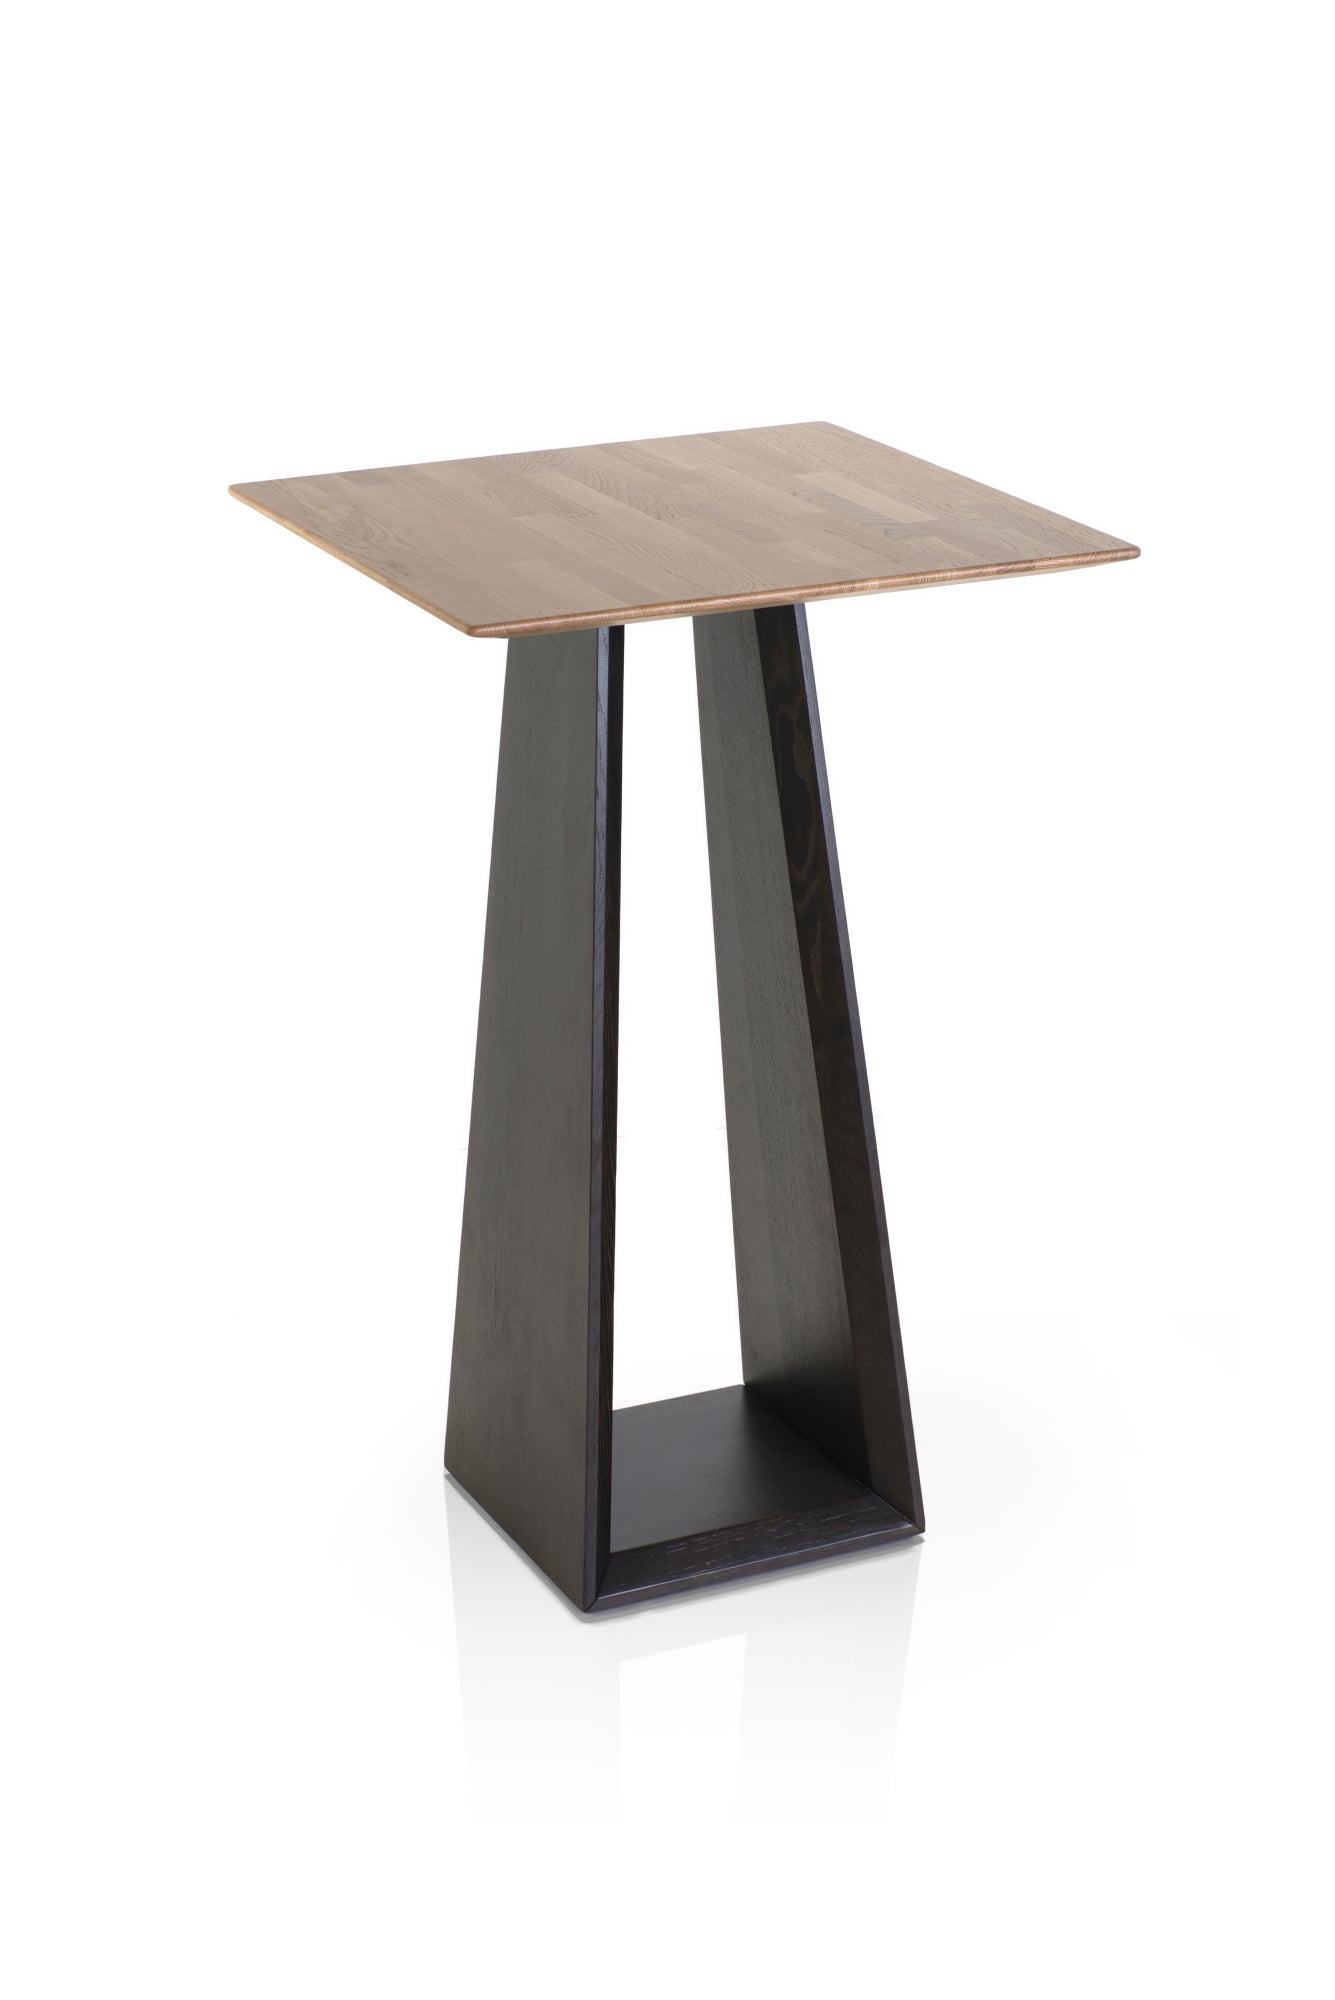 Prisma Poseur Table-Sillalfaro-Contract Furniture Store